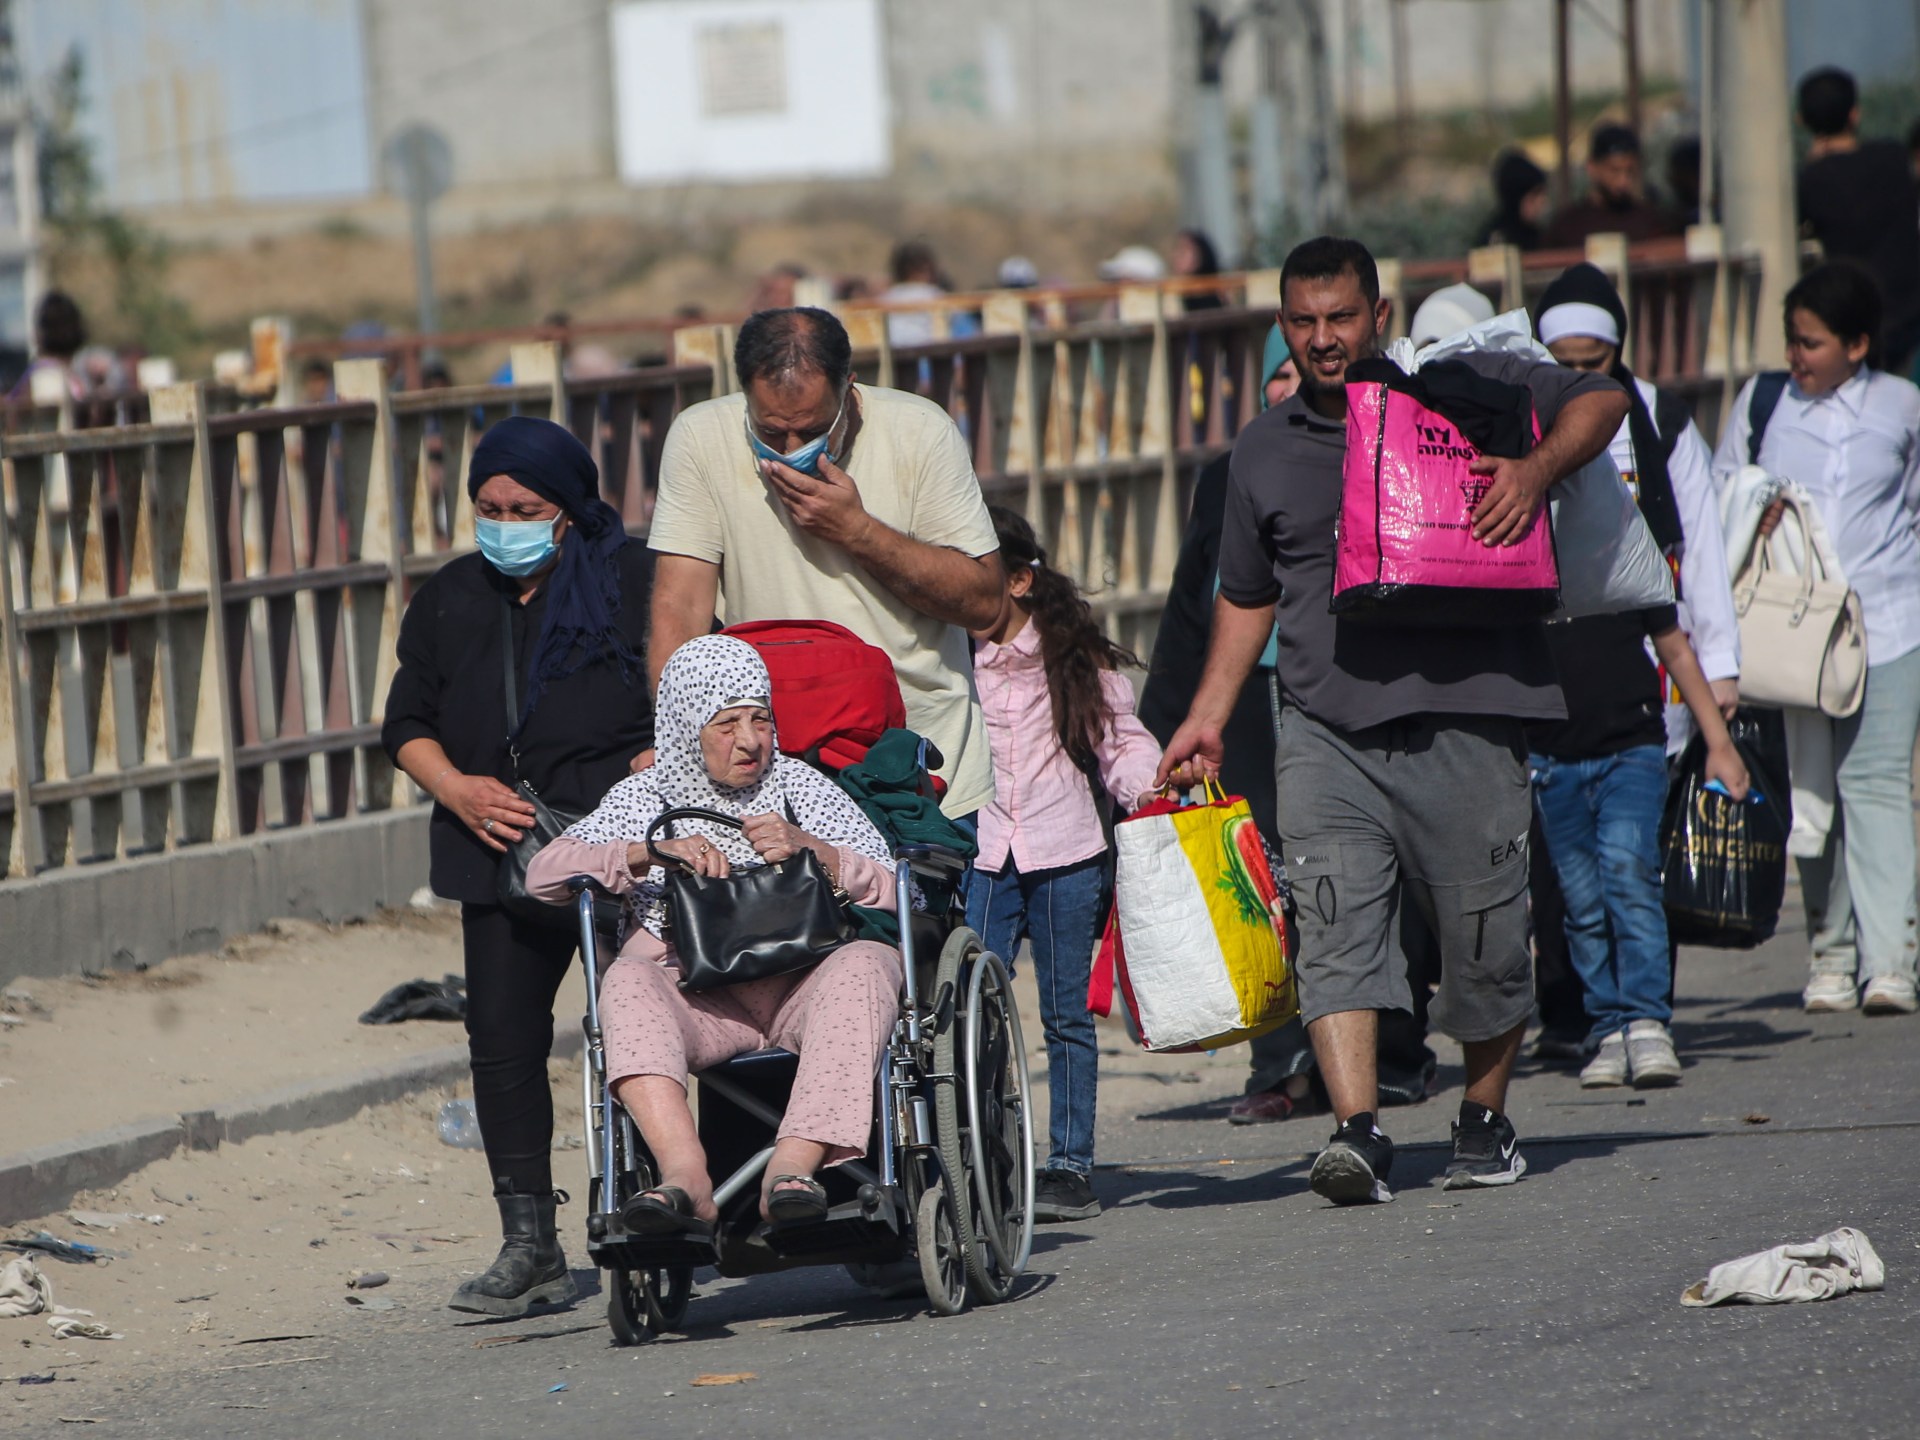 مساعي التهجير لا تتوقف.. وزيرة إسرائيلية تدعو إلى “إعادة توطين” سكان غزة | أخبار – البوكس نيوز